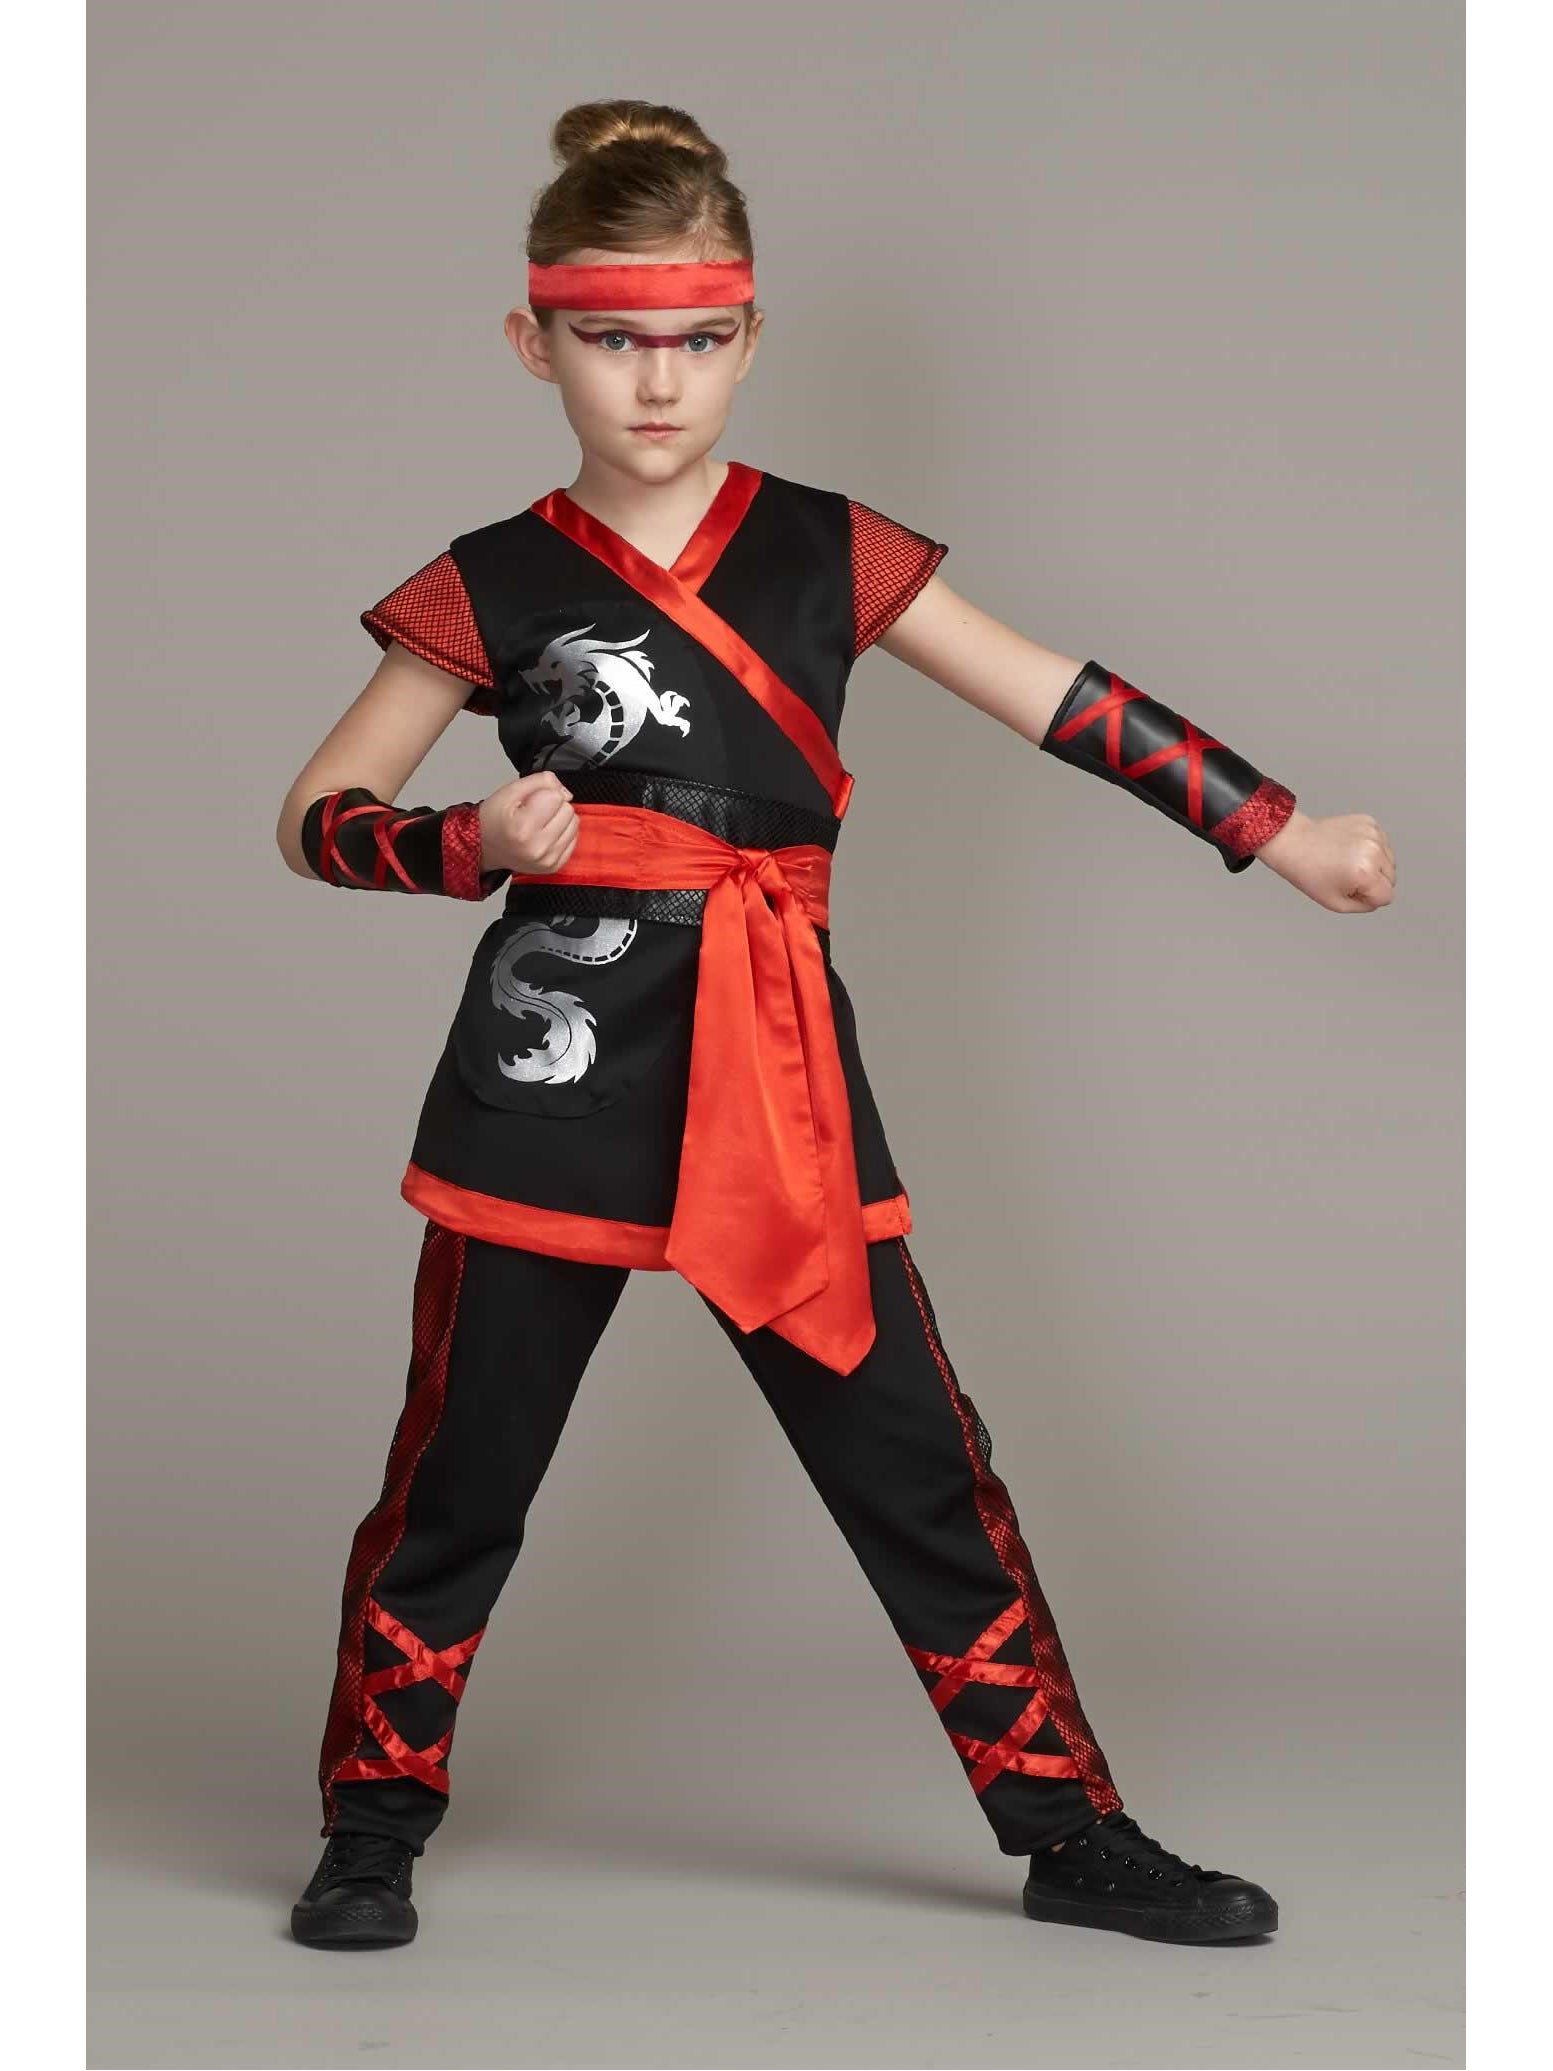 Red Ninja Costume For Girls – Chasing Fireflies